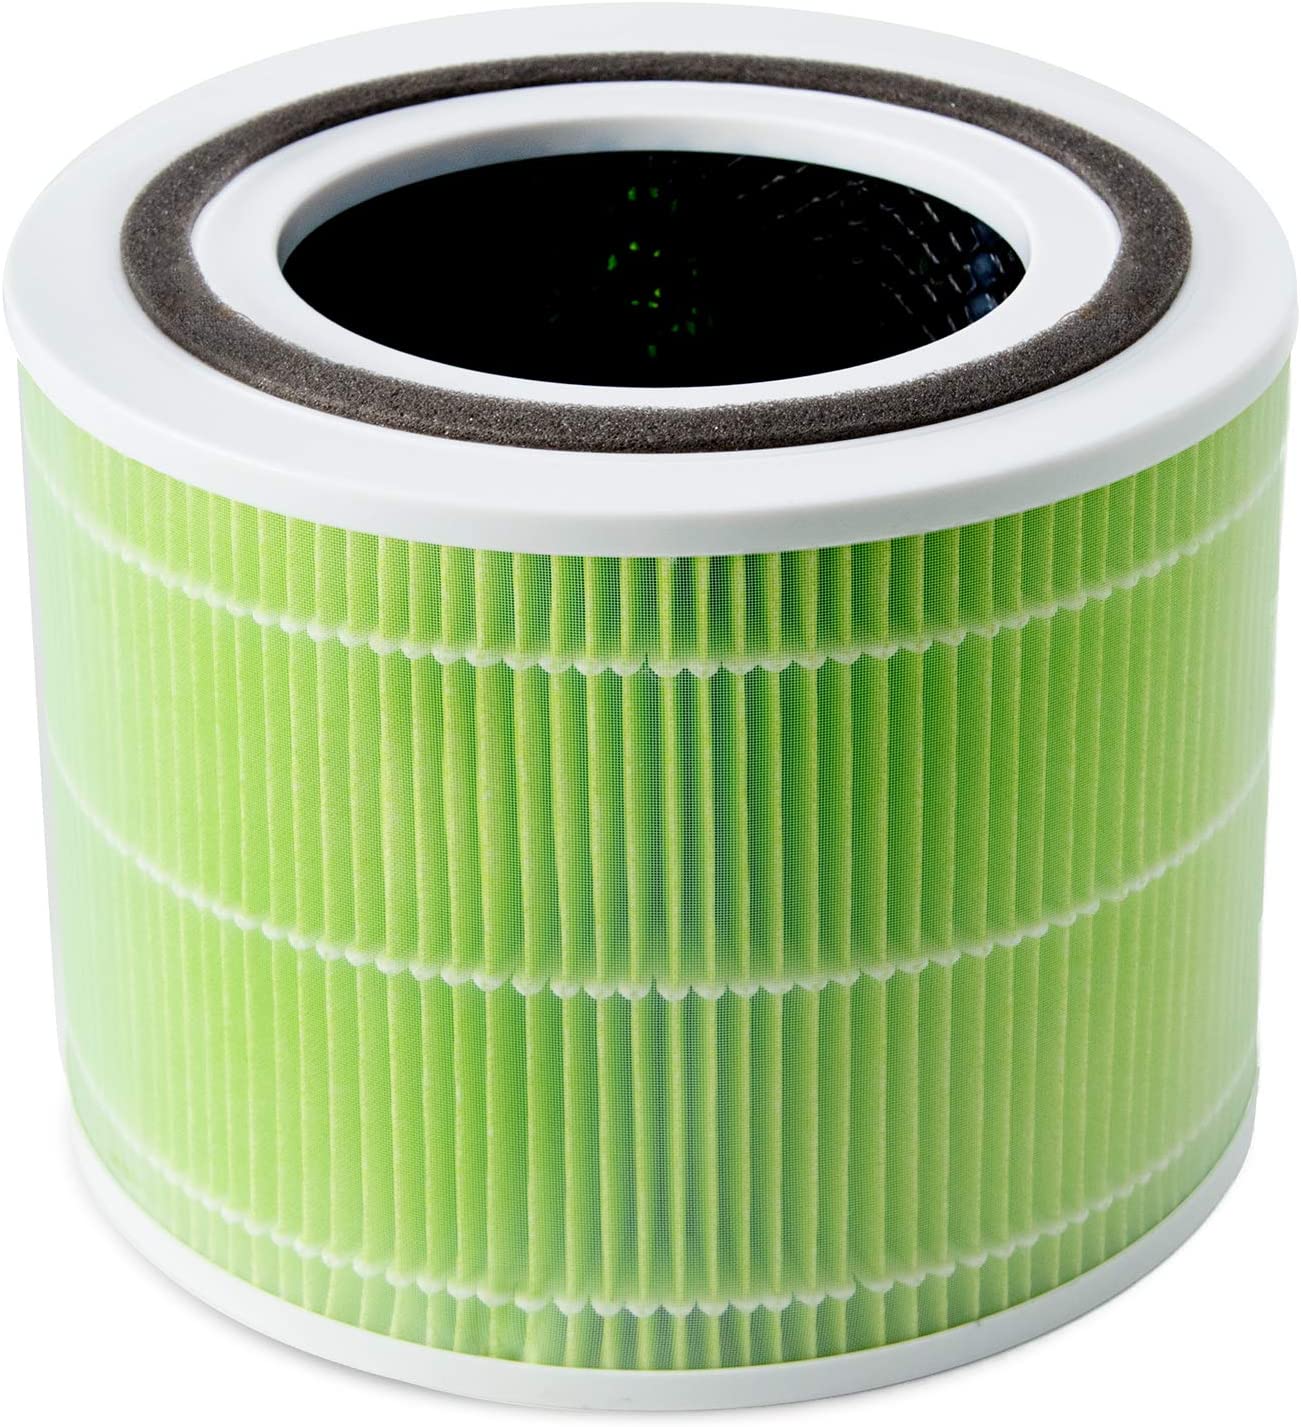 Инструкция фильтр для увлажнителя воздуха Levoit Air Cleaner Filter Core 300 True HEPA 3-Stage (Original Mold and Bacteria Filter)